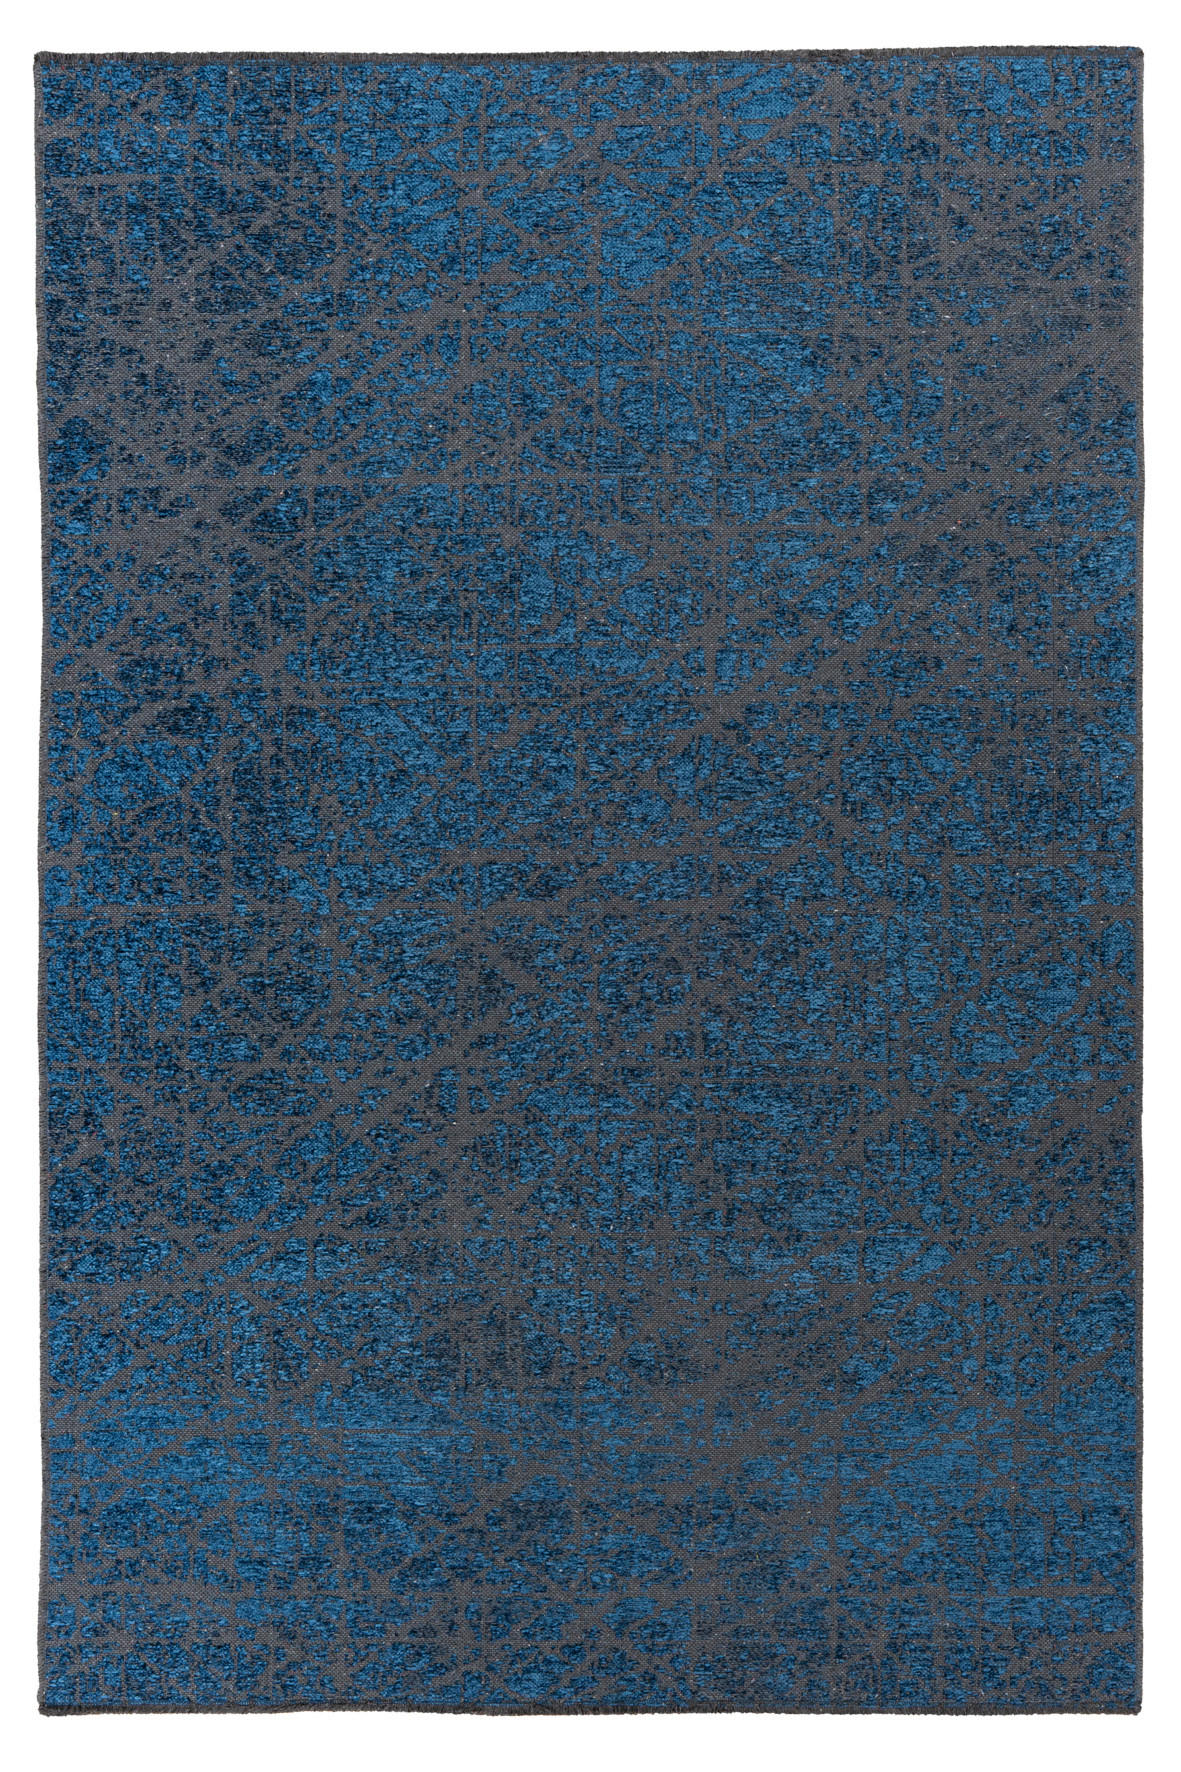 In- und Outdoorteppich  80/150 cm  Blau   - Blau, Design, Textil (80/150cm) - Novel